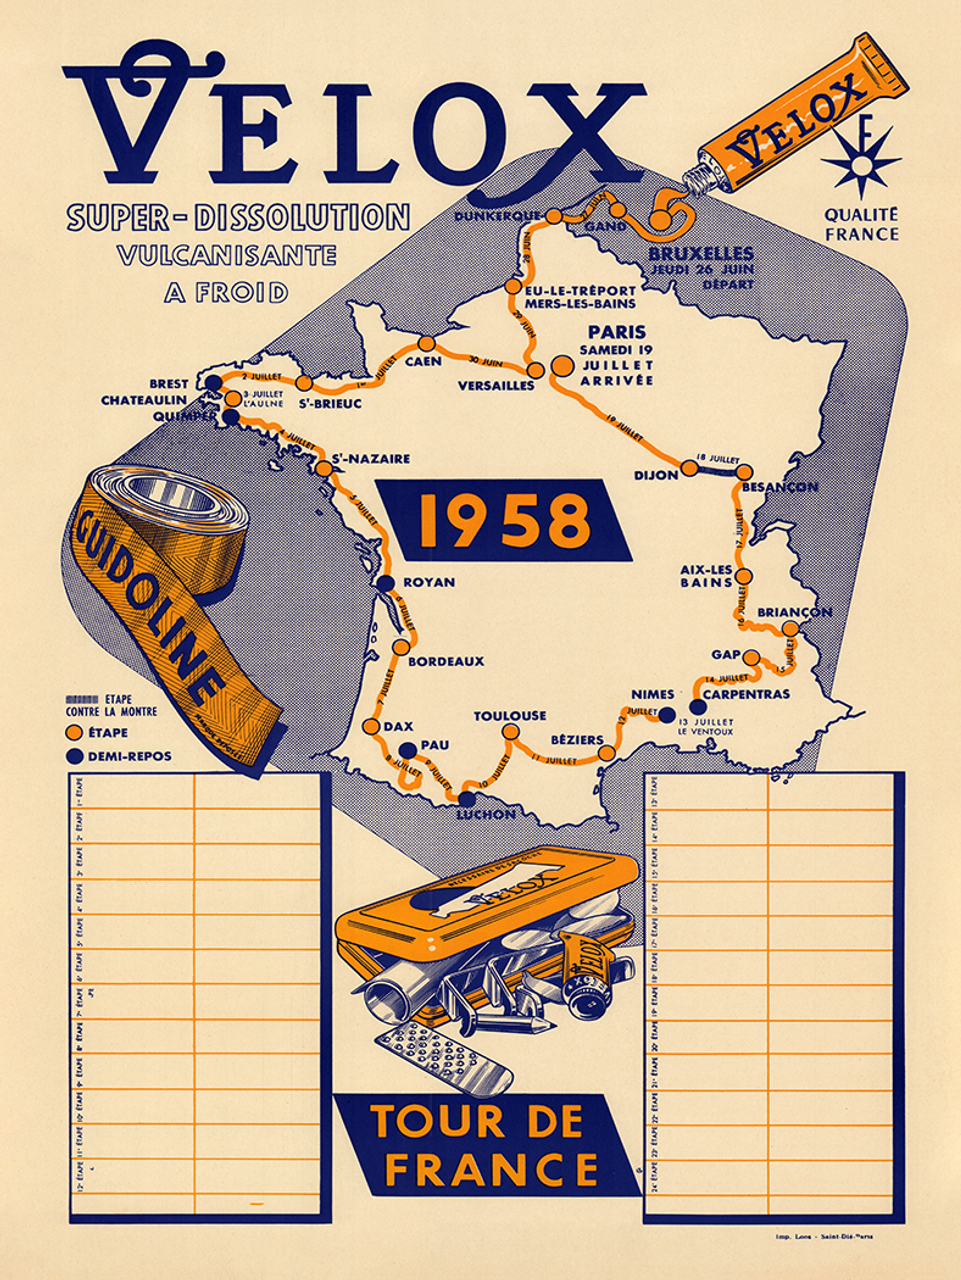 1958 Velox Tour de France Vintage Map Poster designed so fans could follow the race